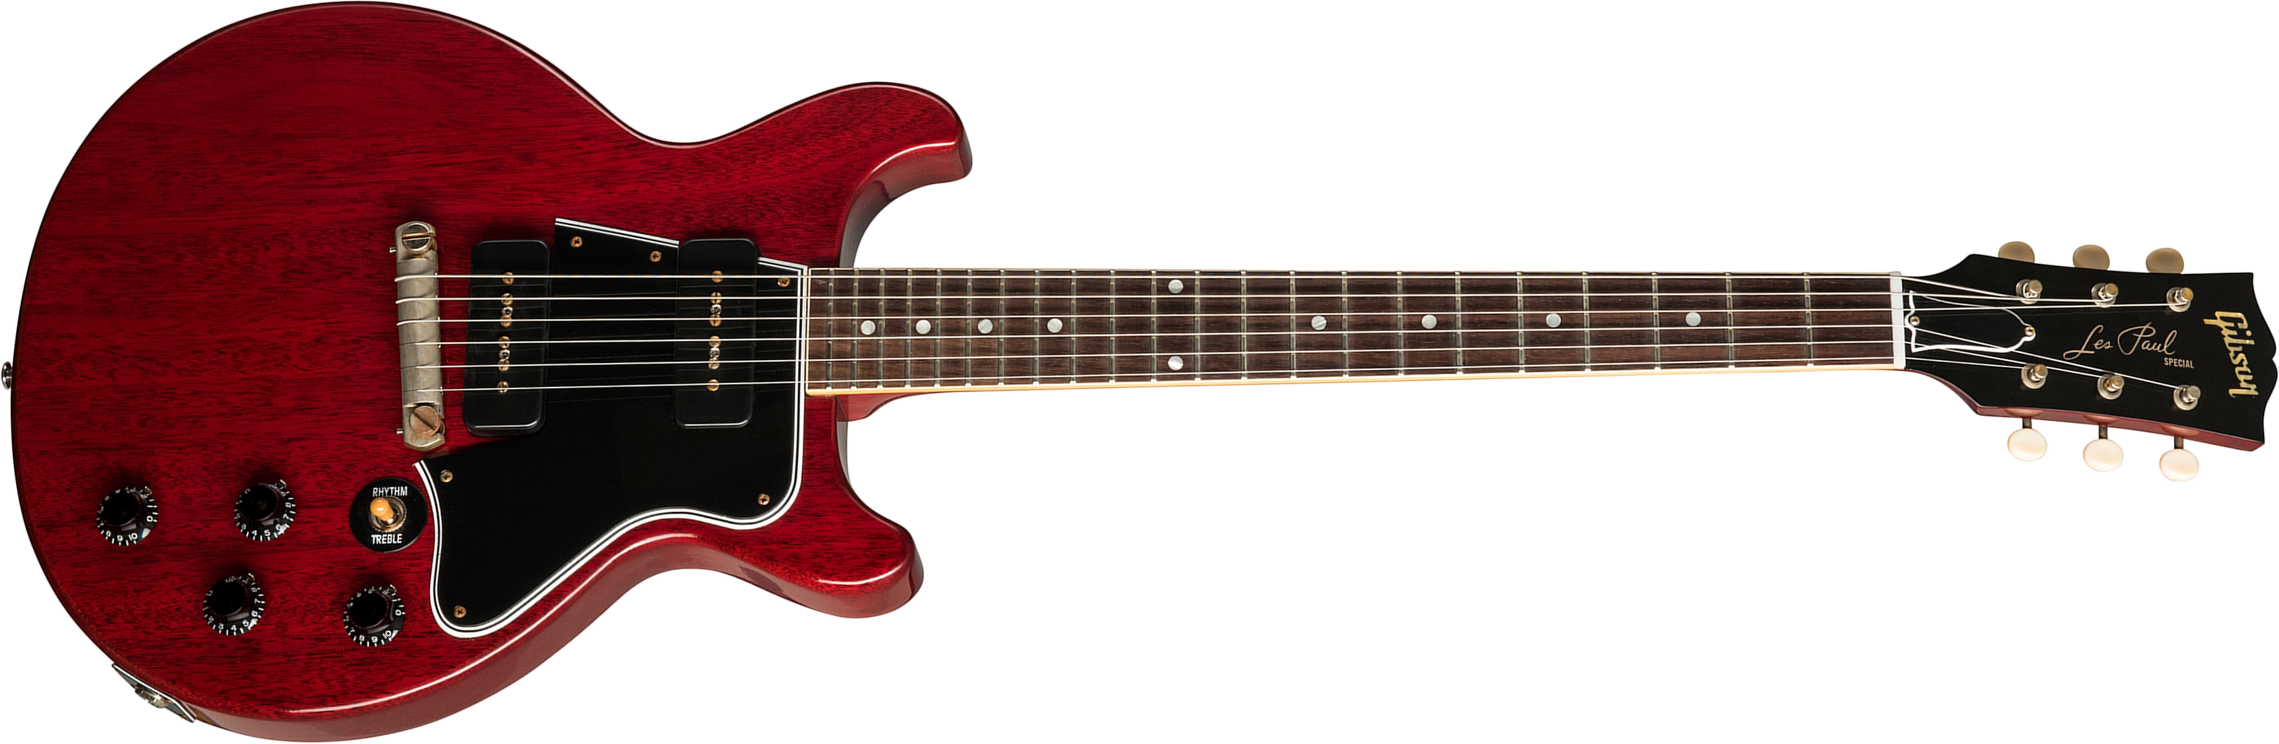 Gibson Custom Shop Les Paul Special 1960 Double Cut Reissue 2p90 Ht Rw - Vos Cherry Red - Guitare Électrique Single Cut - Main picture